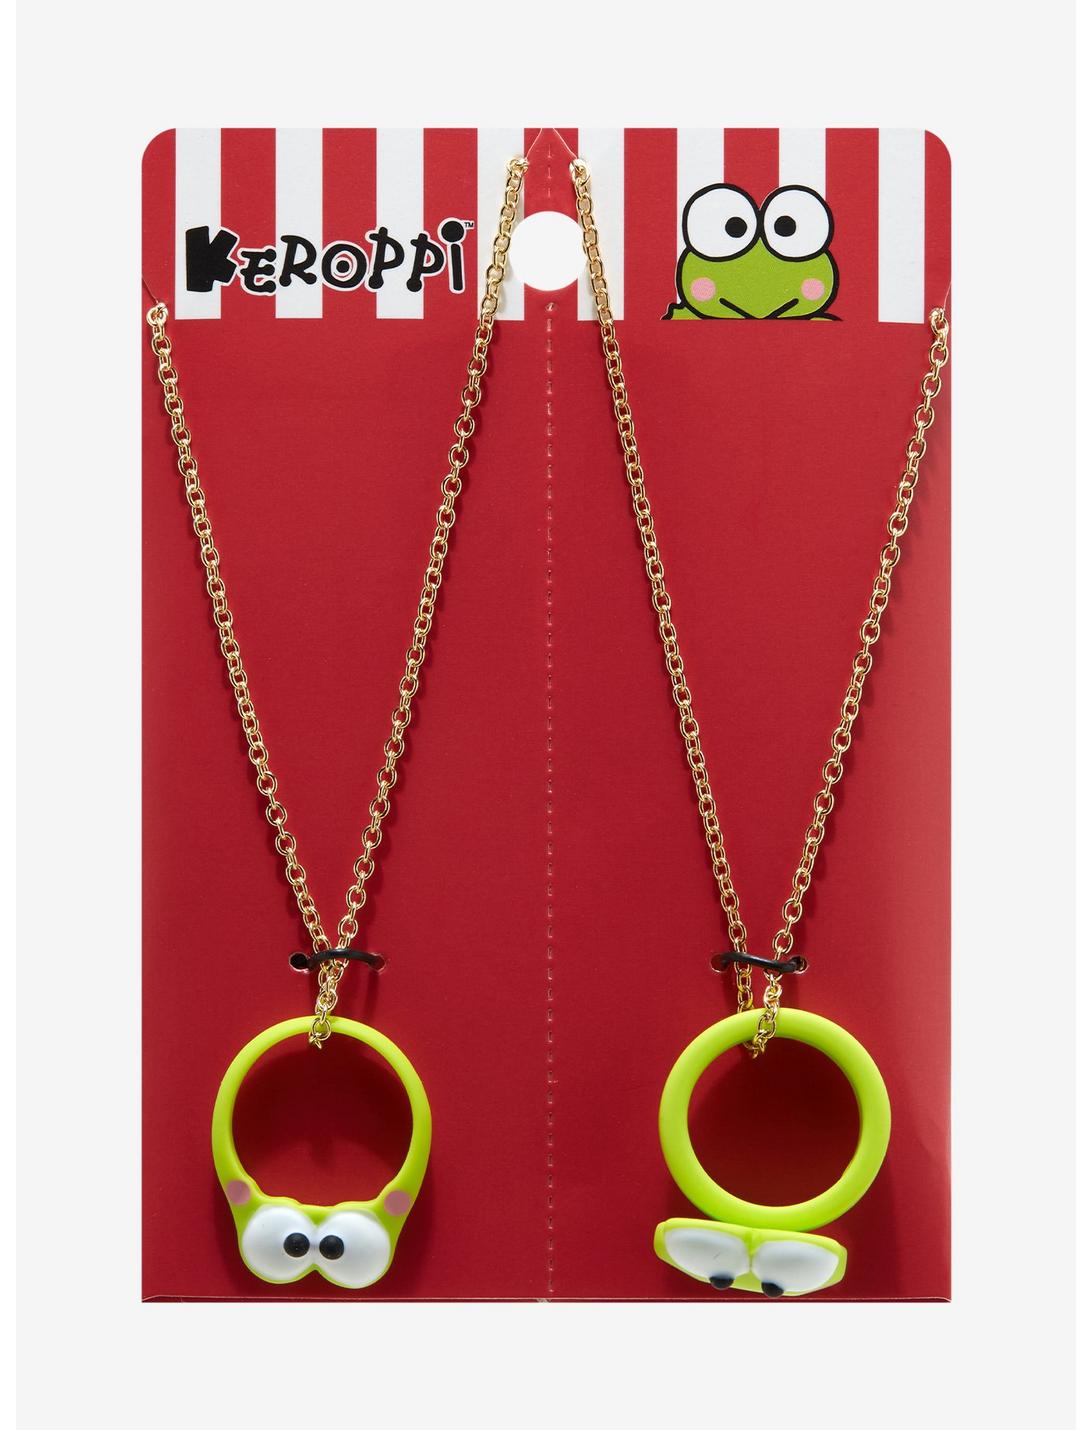 Keroppi Figural Ring Best Friend Necklace Set, , hi-res